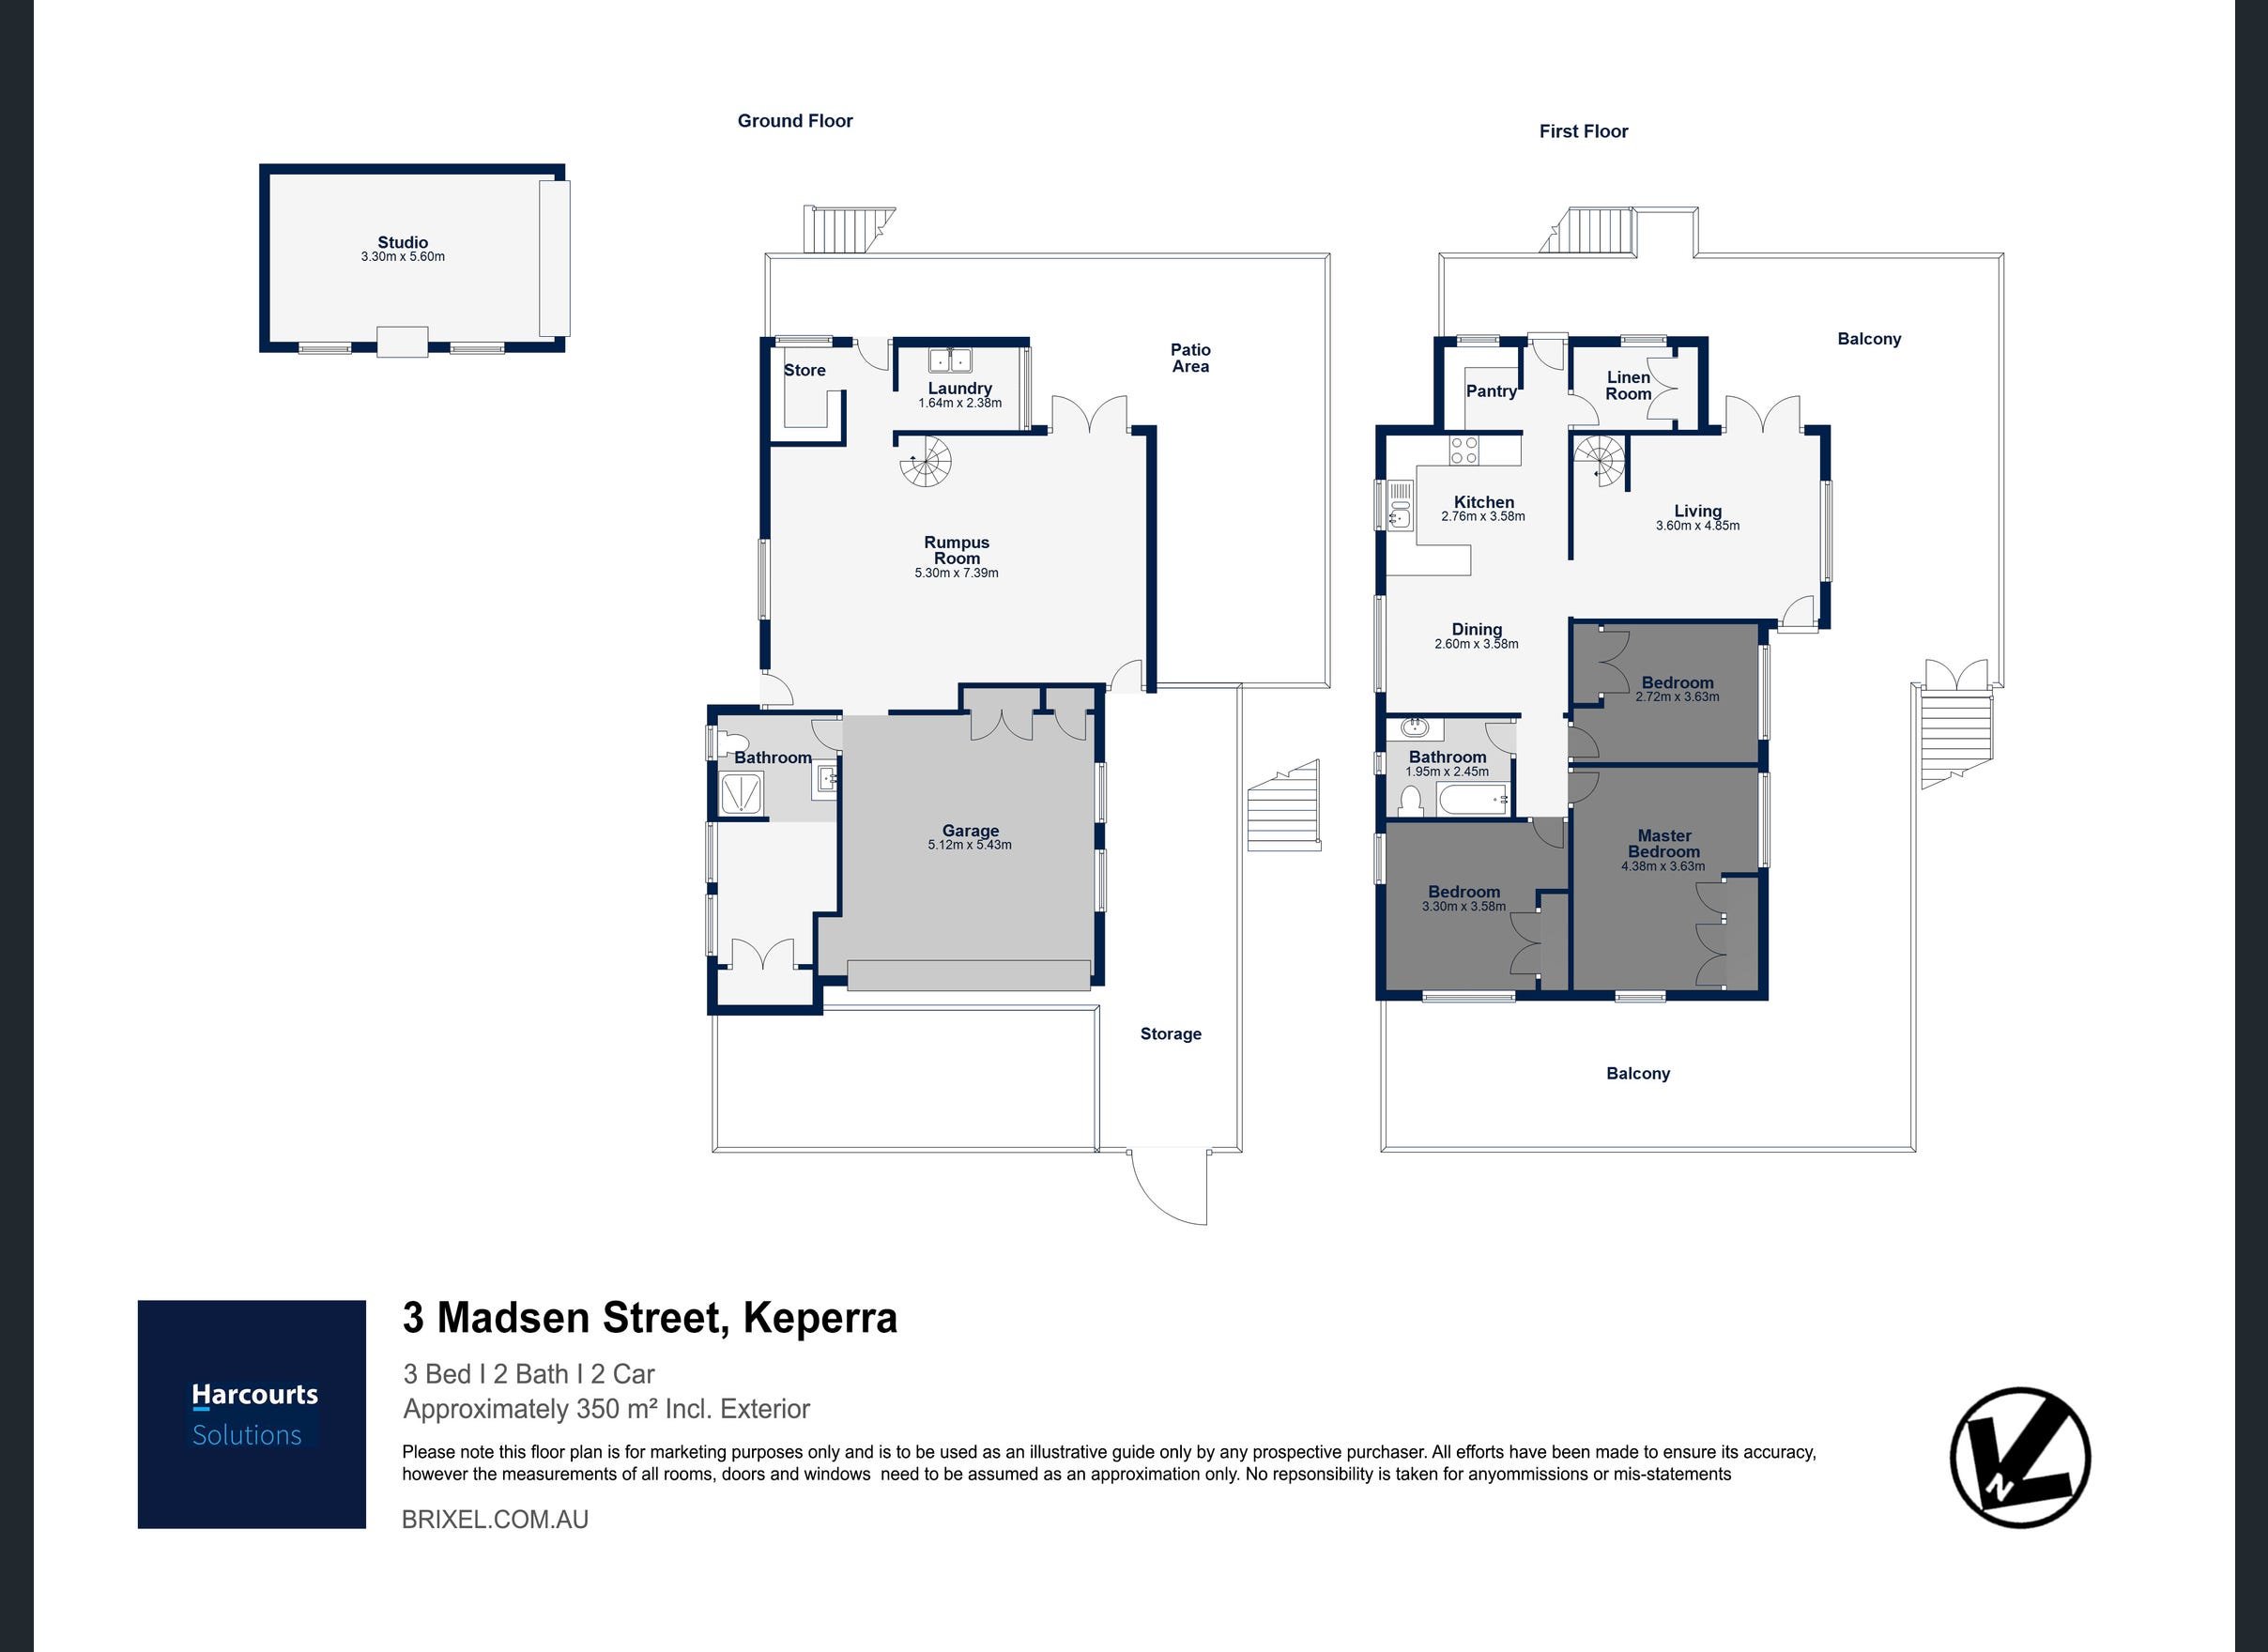 3 Madsen St Keperra Hot Property Buyers Agency floor plan.jpeg